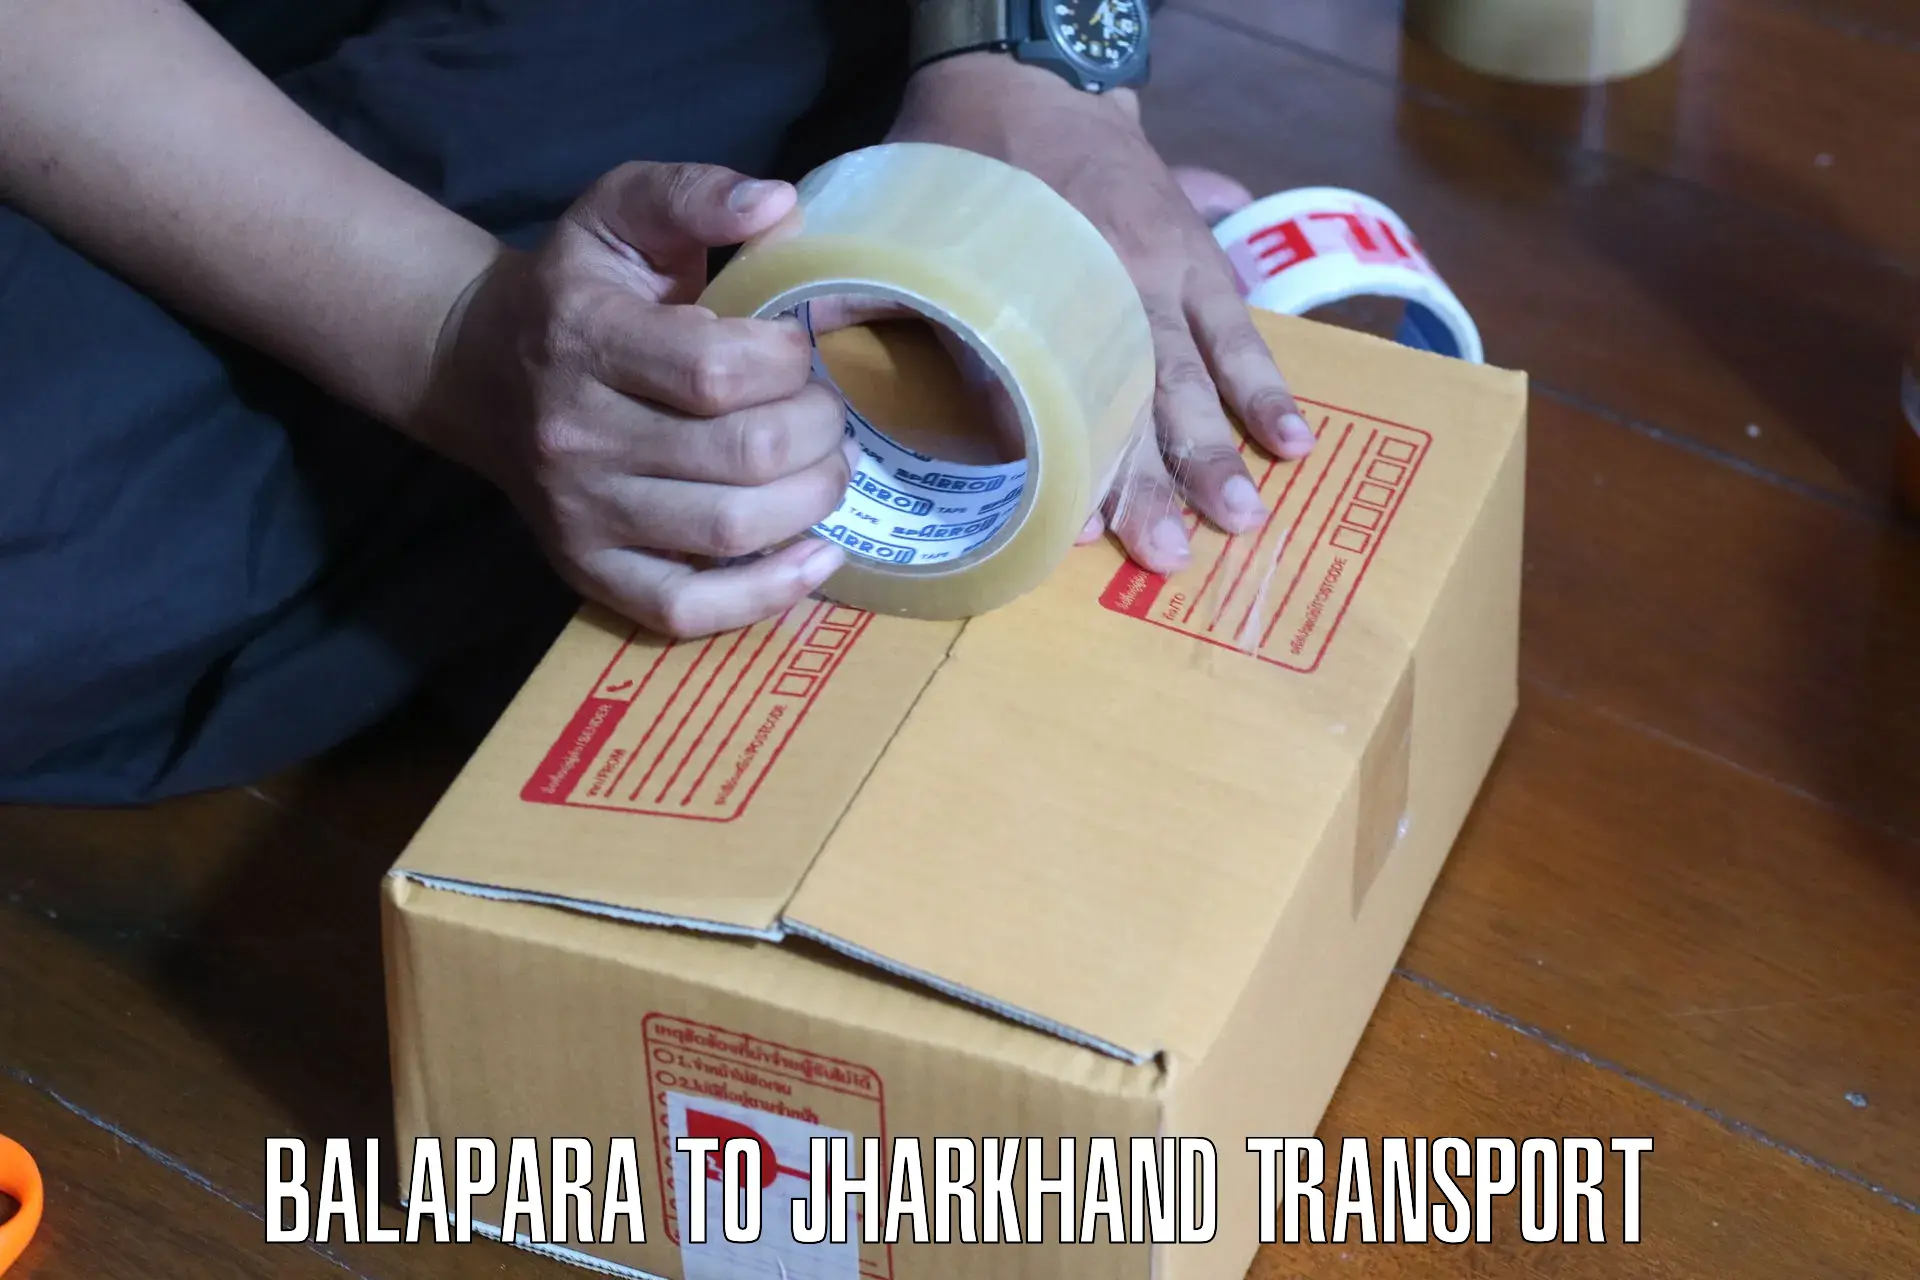 Furniture transport service Balapara to Barharwa